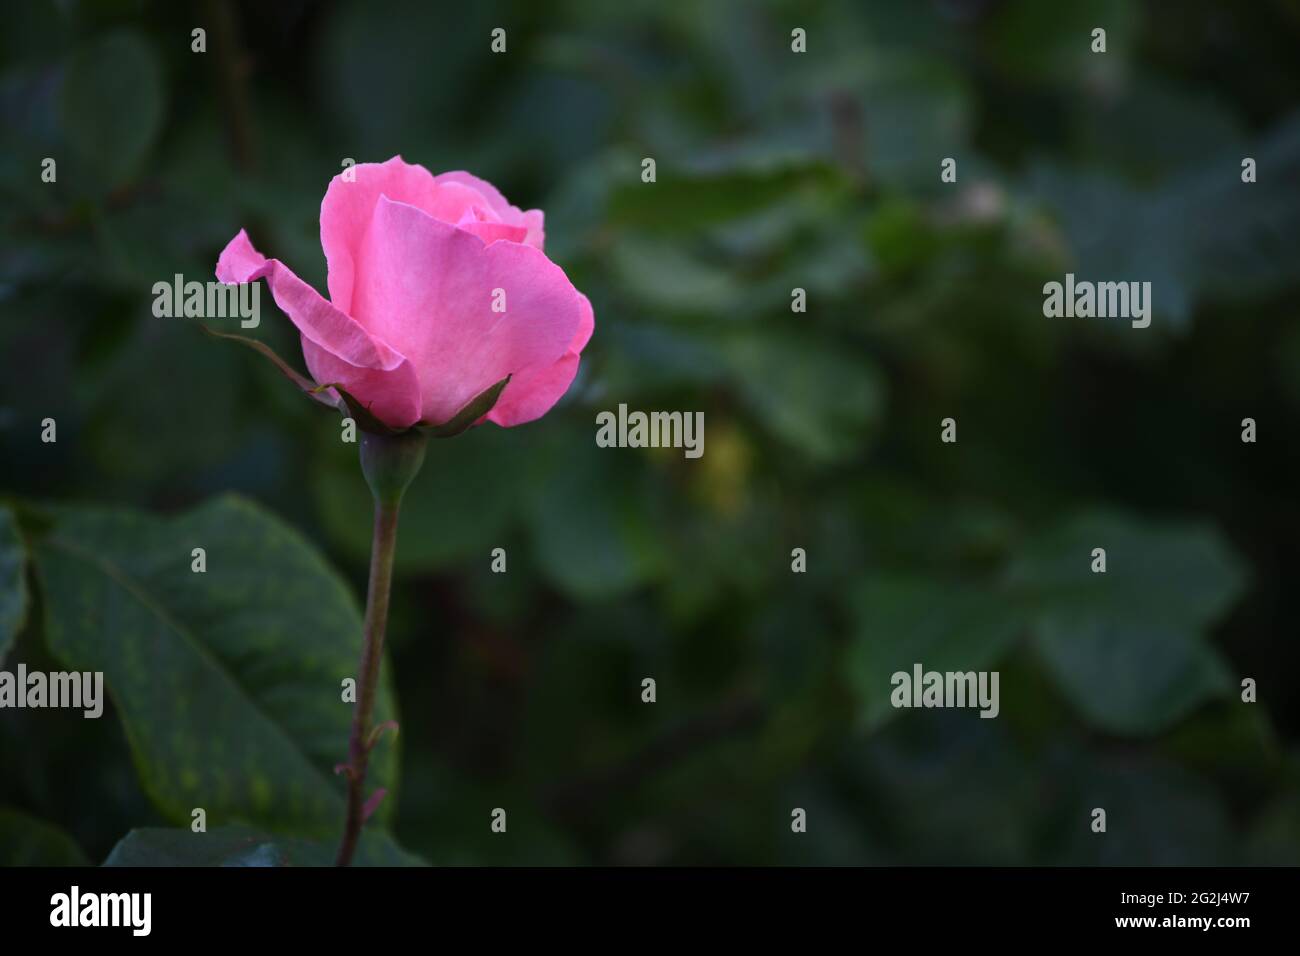 Heilpflanze Rose - rosa - mit herrlicher rosafarbener Rosenblüte als Zeichen der Liebe und Freudschaft Banque D'Images